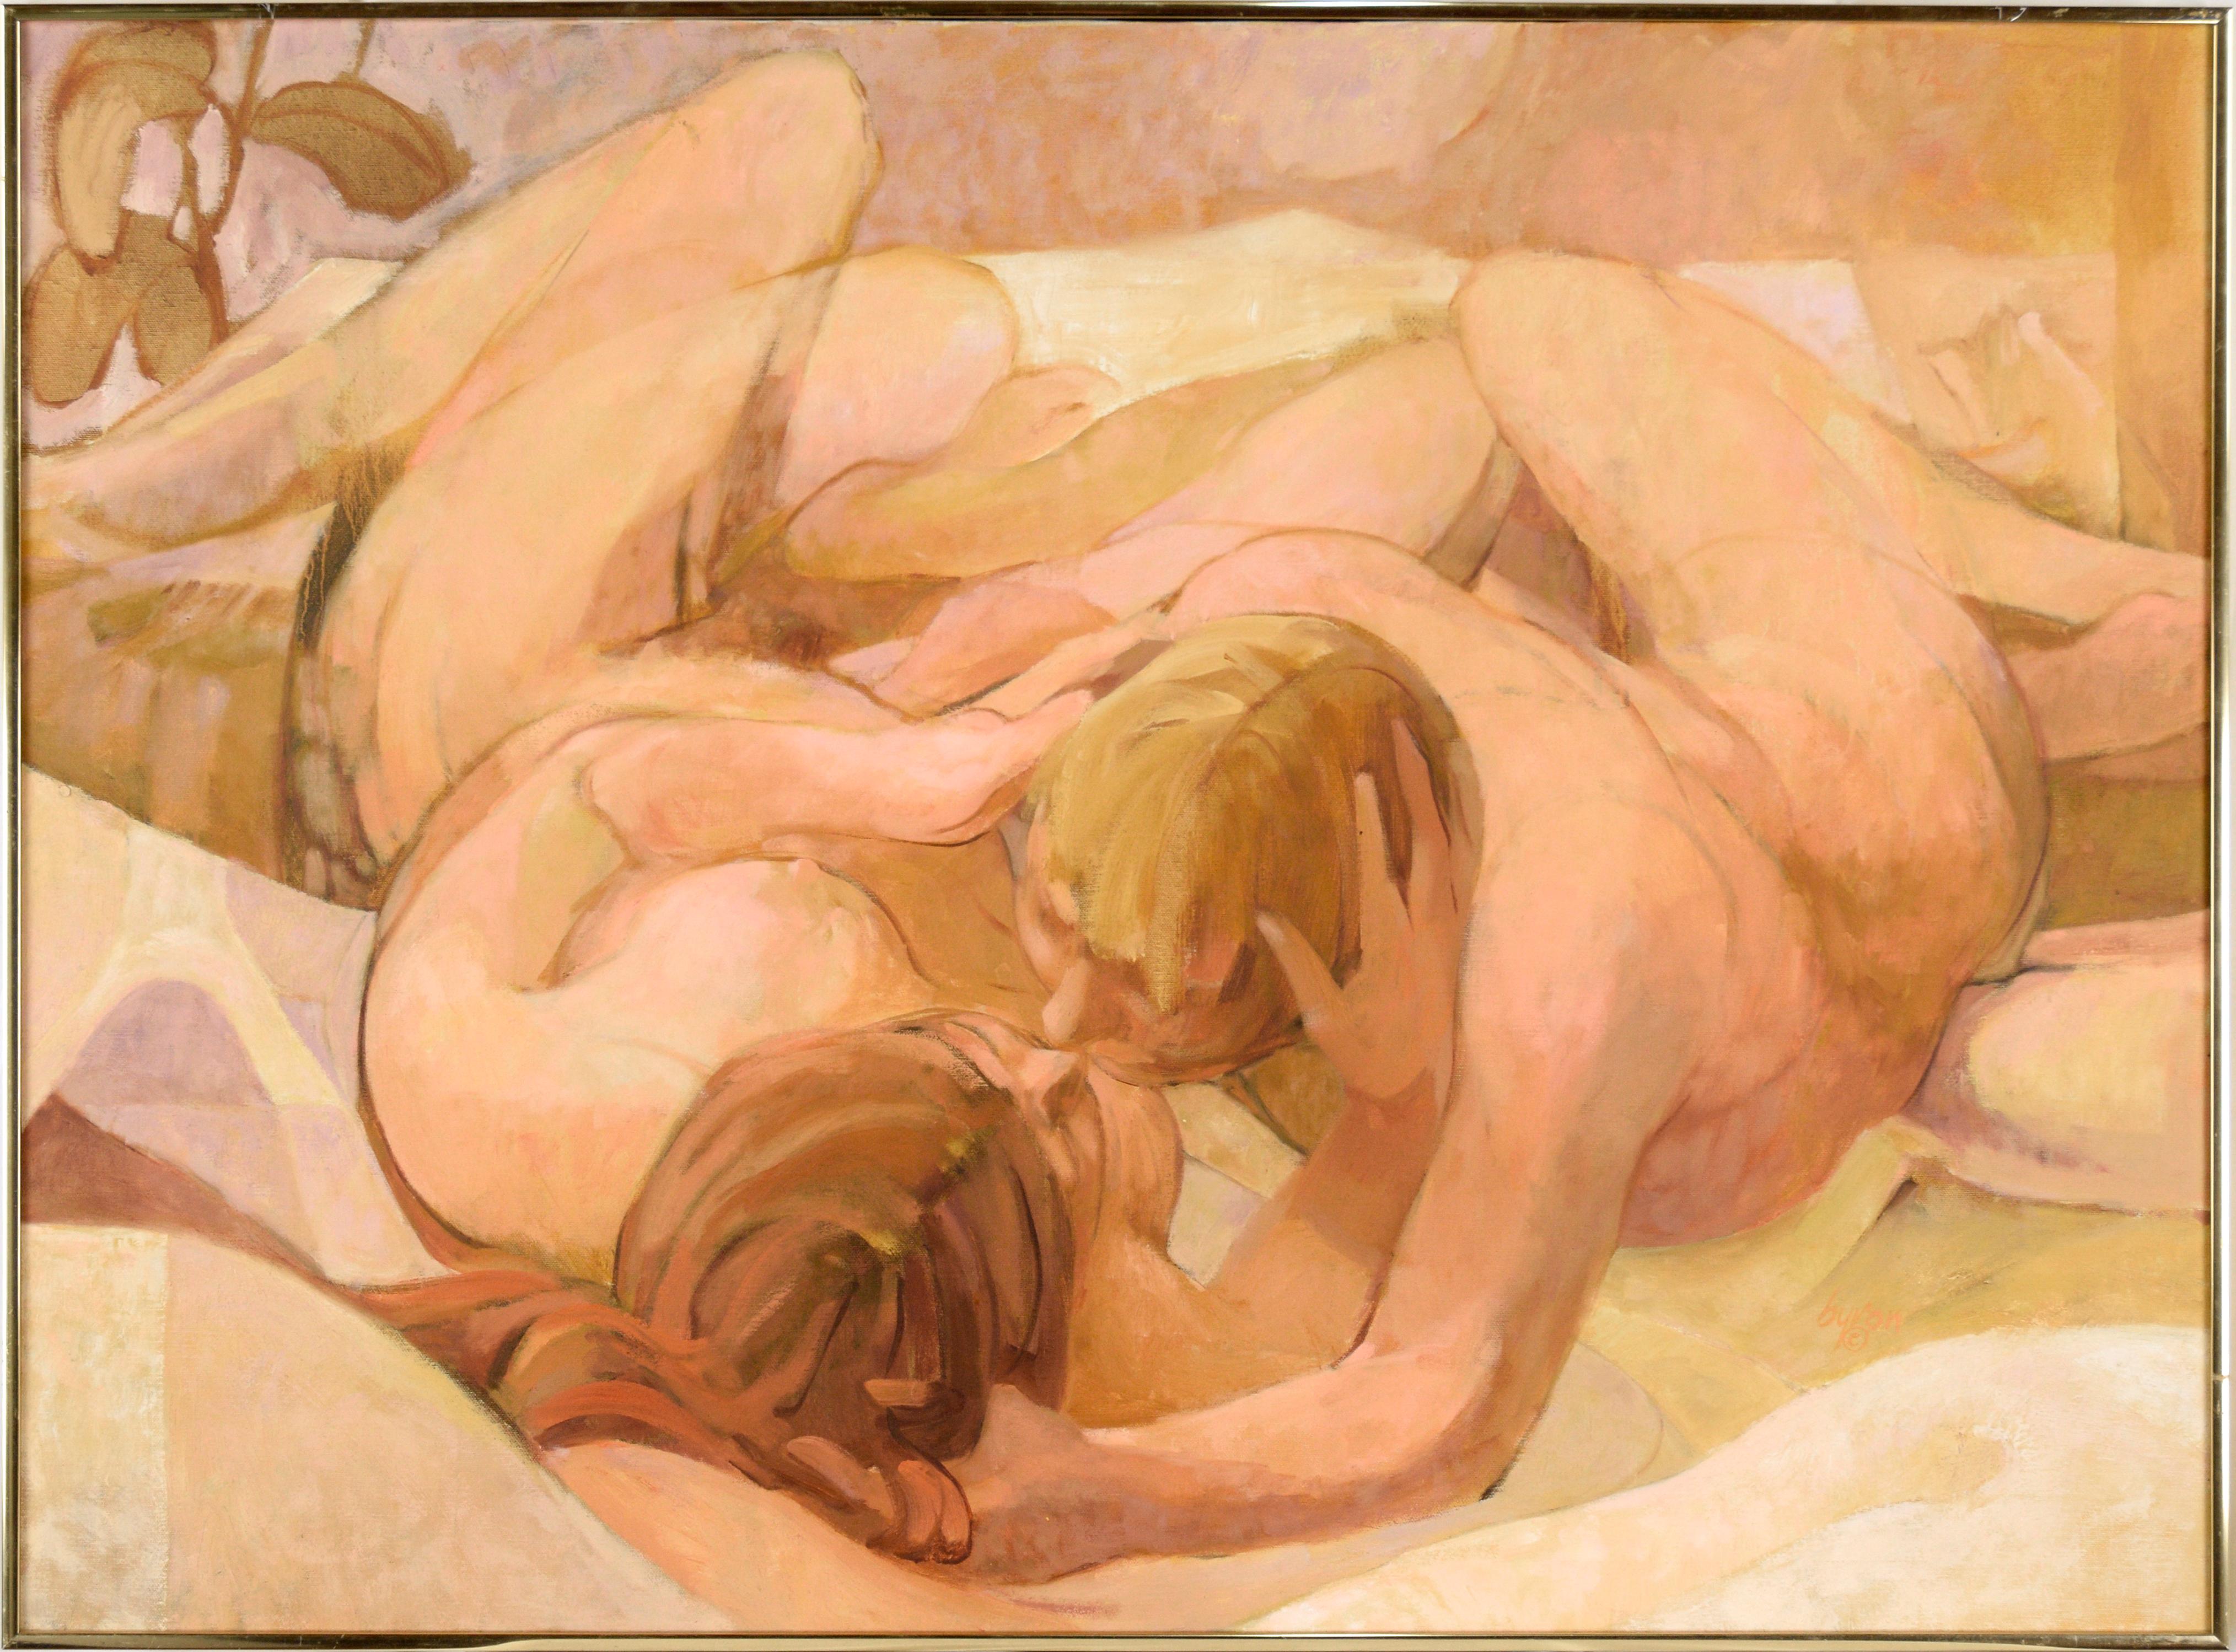 Figurative Painting Byron Richard Rodarmel - Deux nus dans un lit - Composition figurative à l'huile sur toile « Morning »